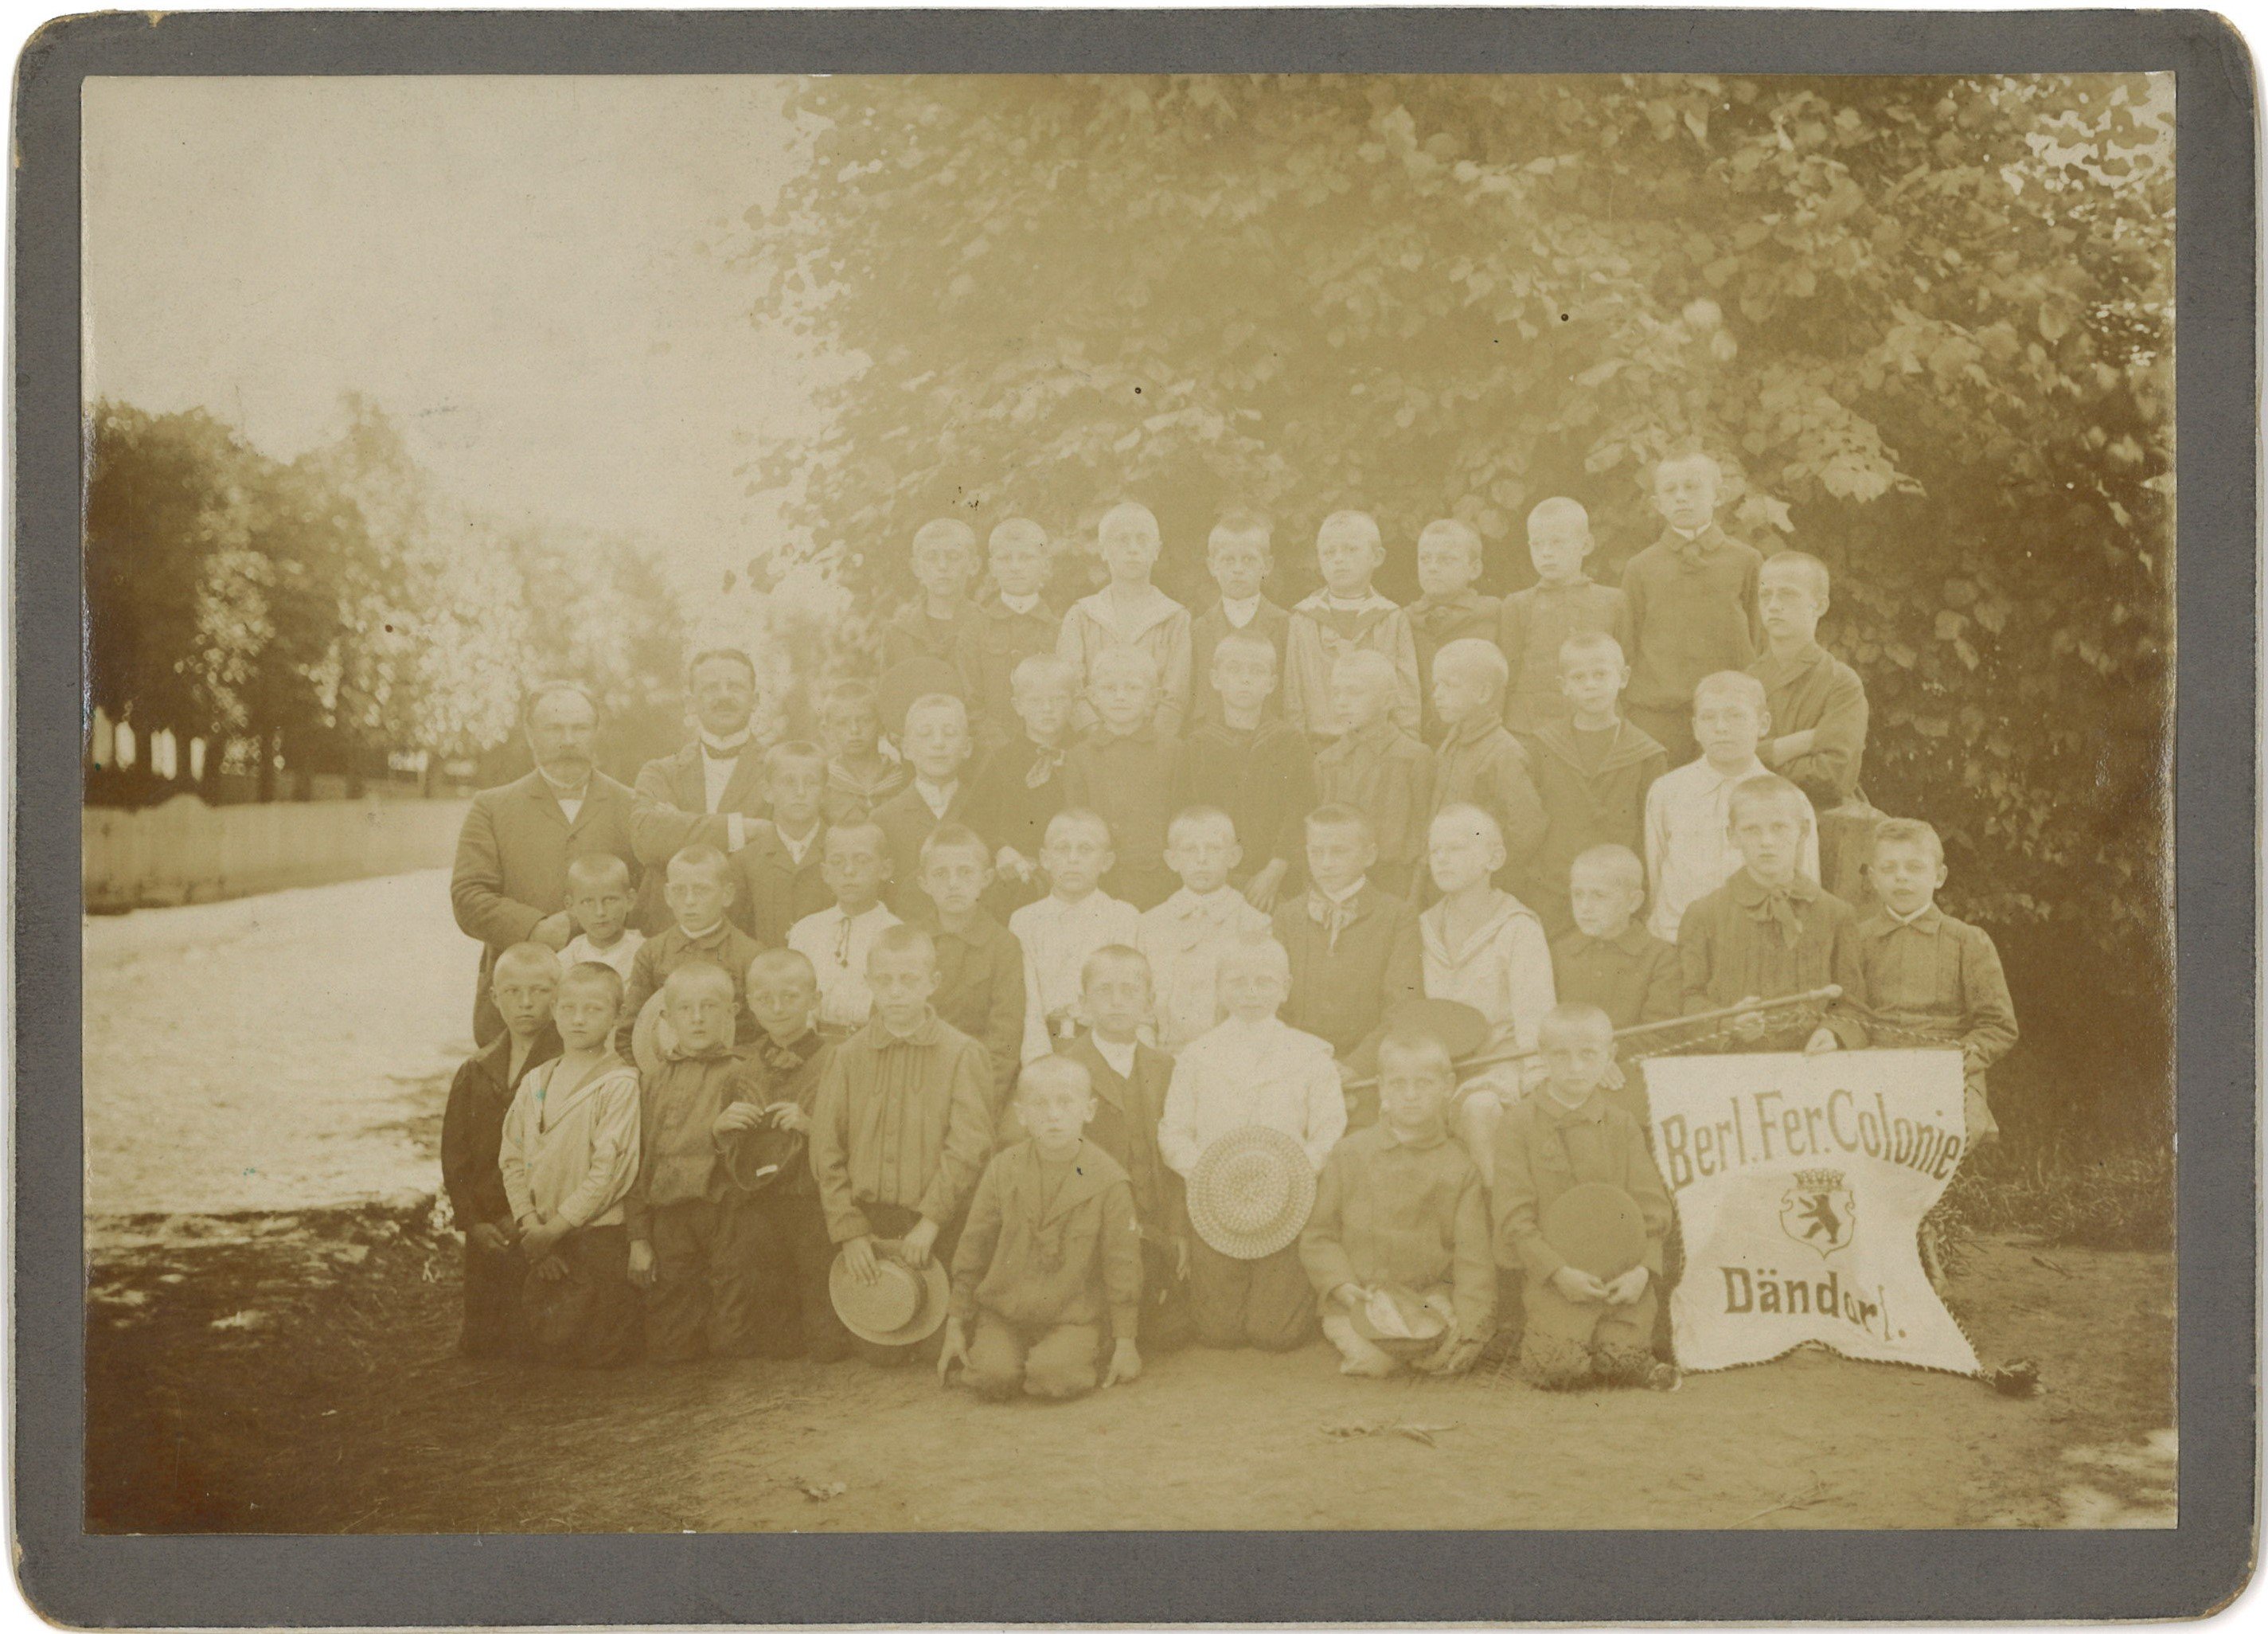 Dändorf: Berliner Schulkinder während eines Ferienaufenthalts um 1905 (Landesgeschichtliche Vereinigung für die Mark Brandenburg e.V., Archiv CC BY)